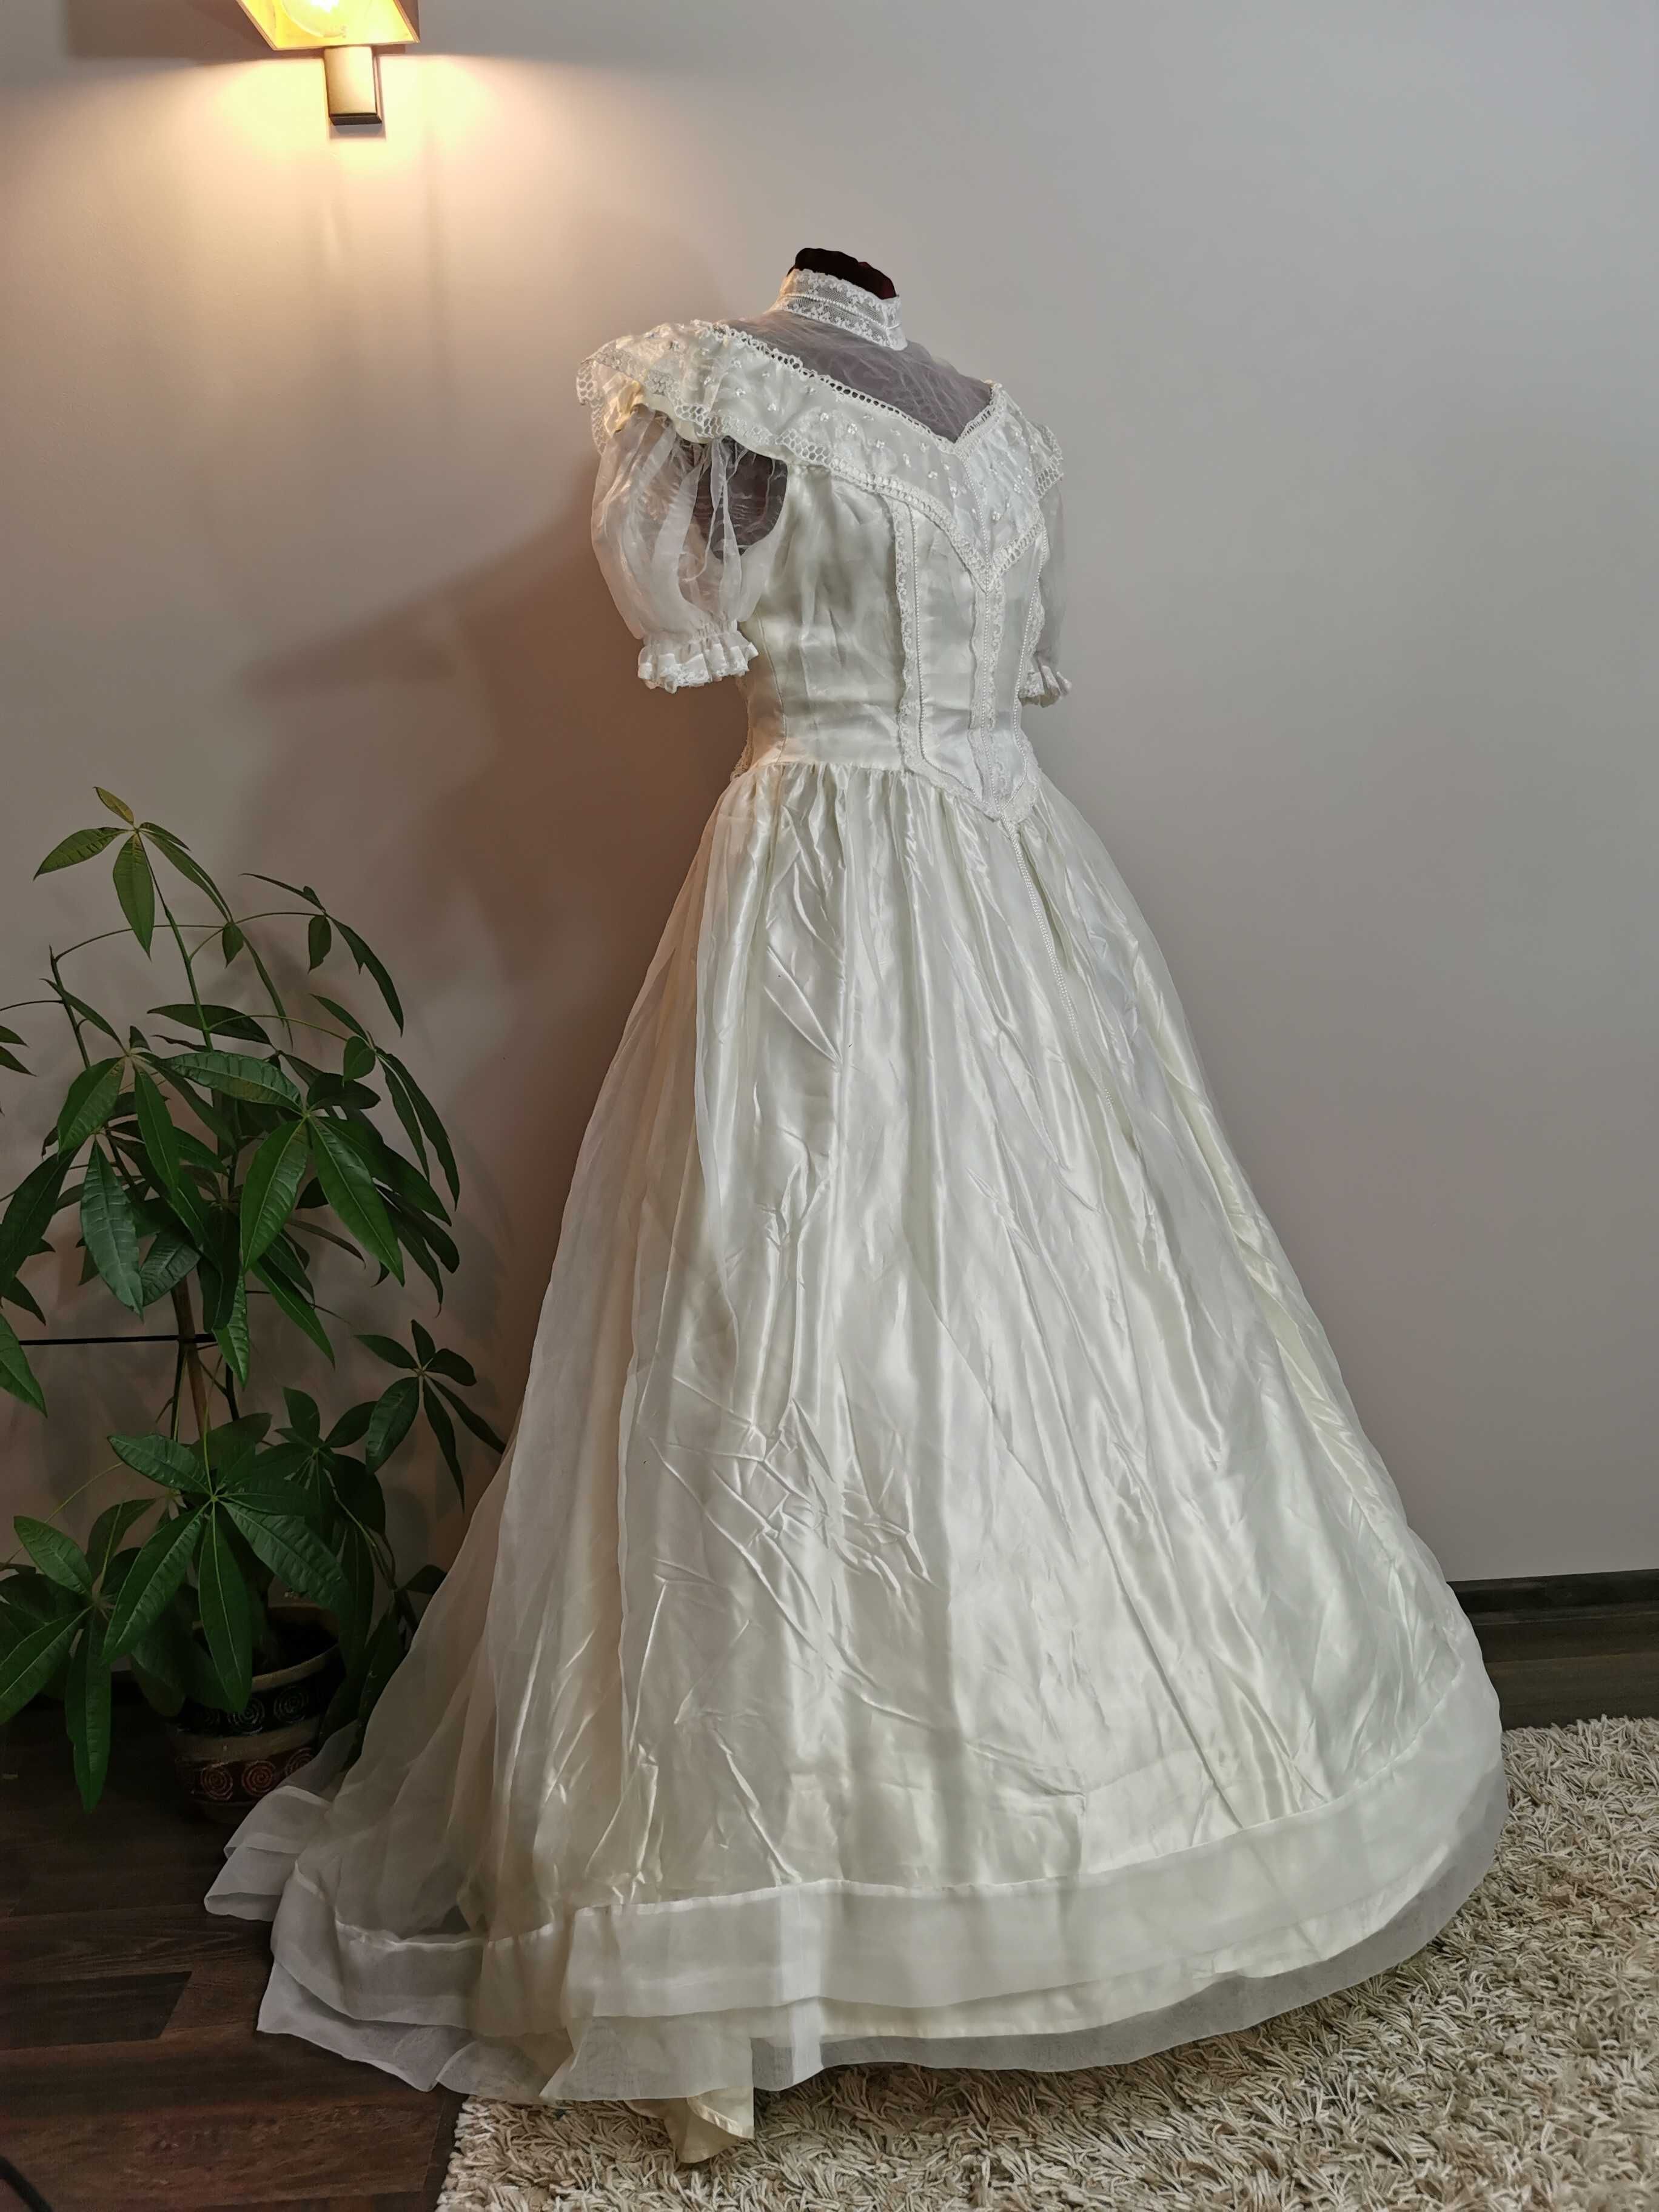 wiktoriańska suknia ślubna z lat 70. inspirowana stylem Gunne Sax